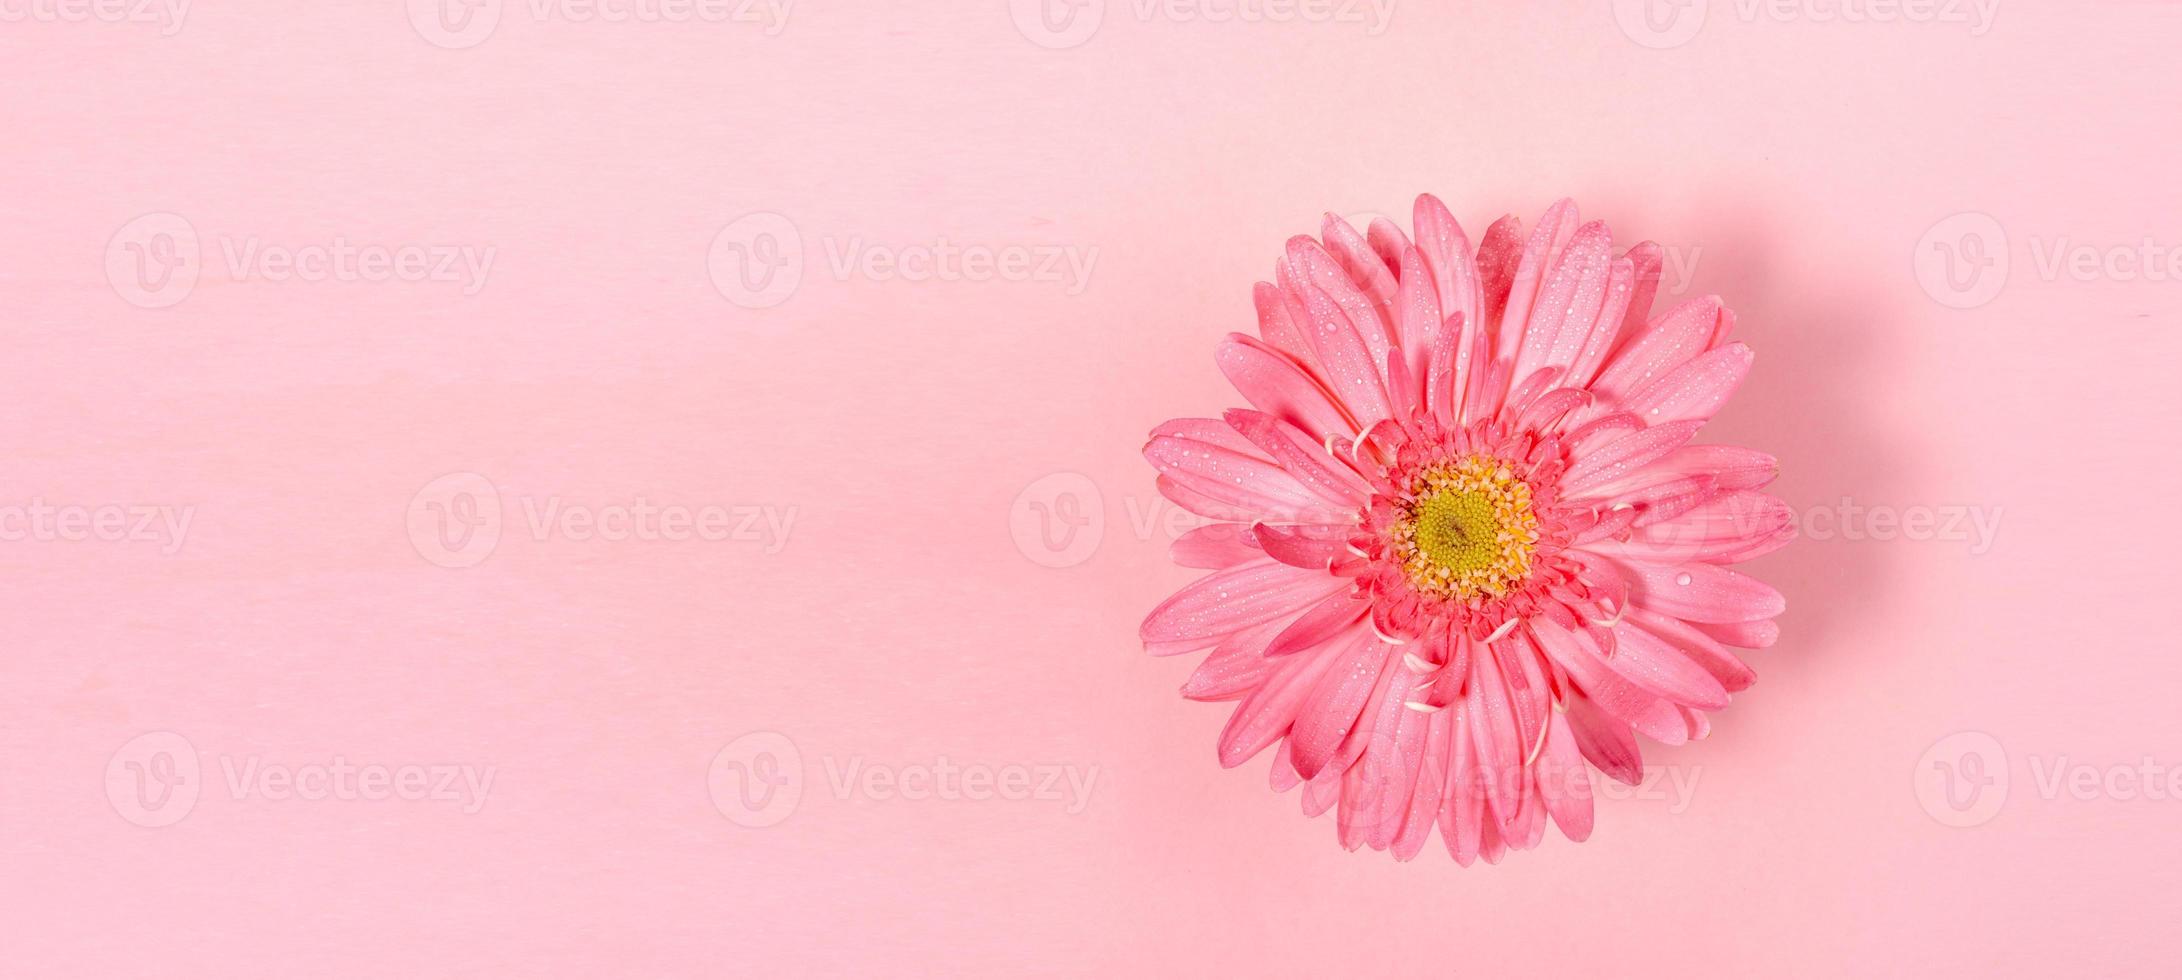 bannière minimale festive rose pastel avec une fleur de gerbera et espace de copie pour le texte. photo